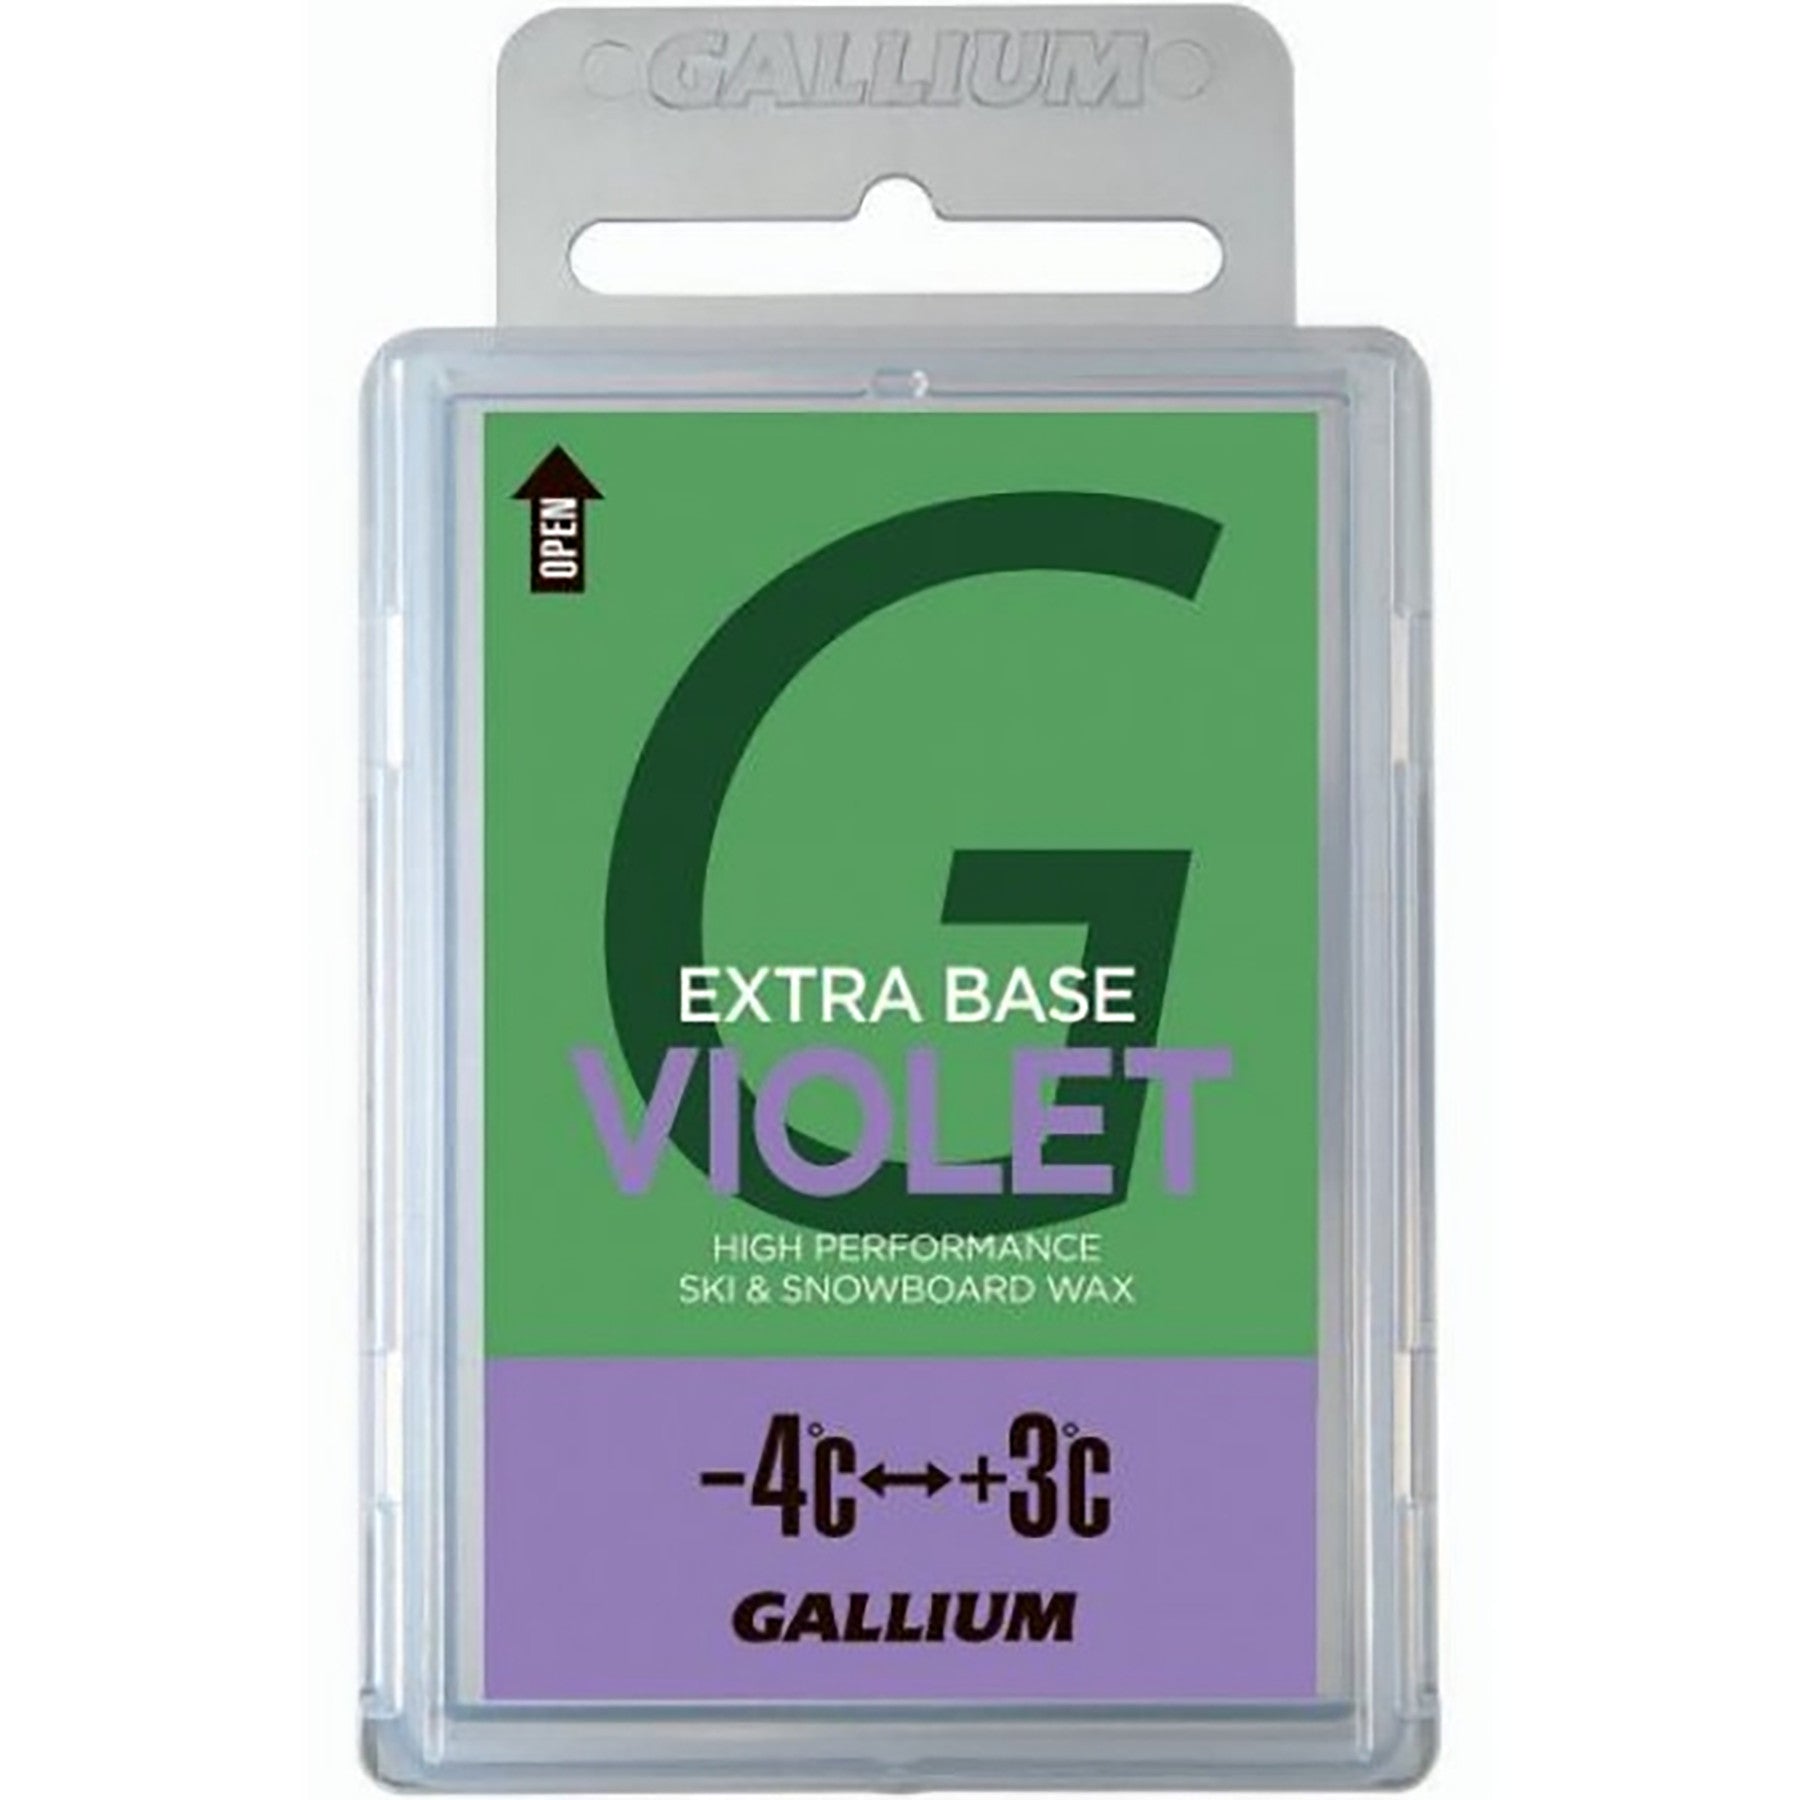 Gallium VIOLET Glide Wax 200g